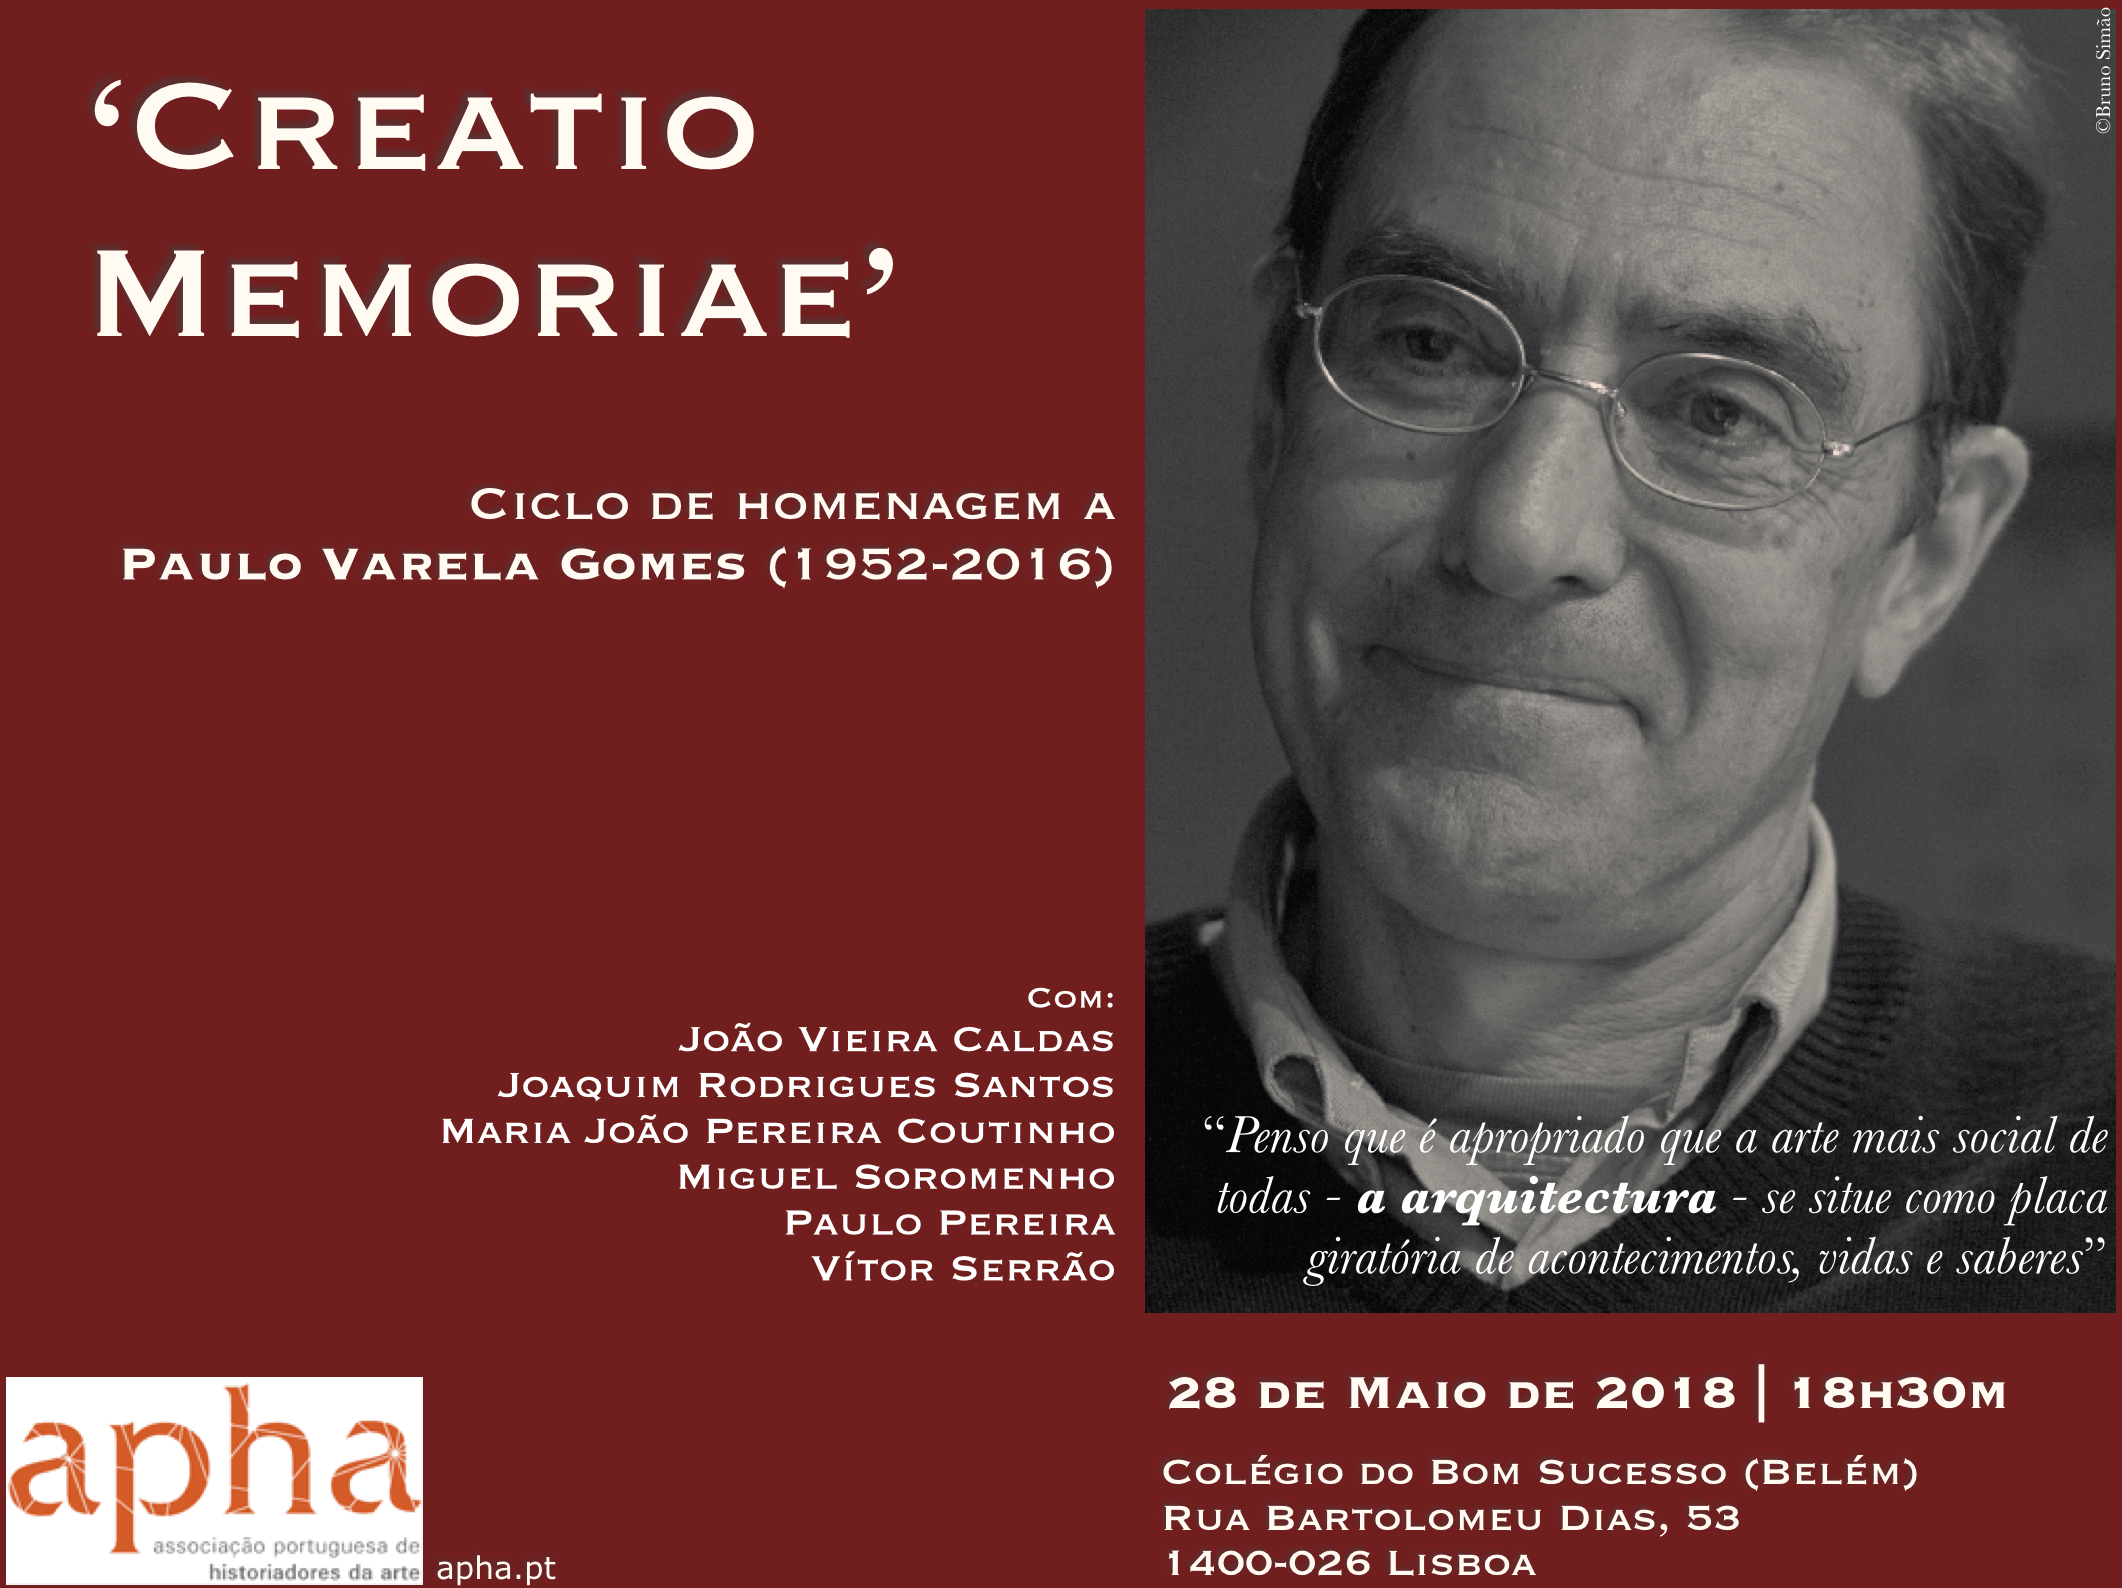 Ciclo de homenagem a Paulo Varela Gomes